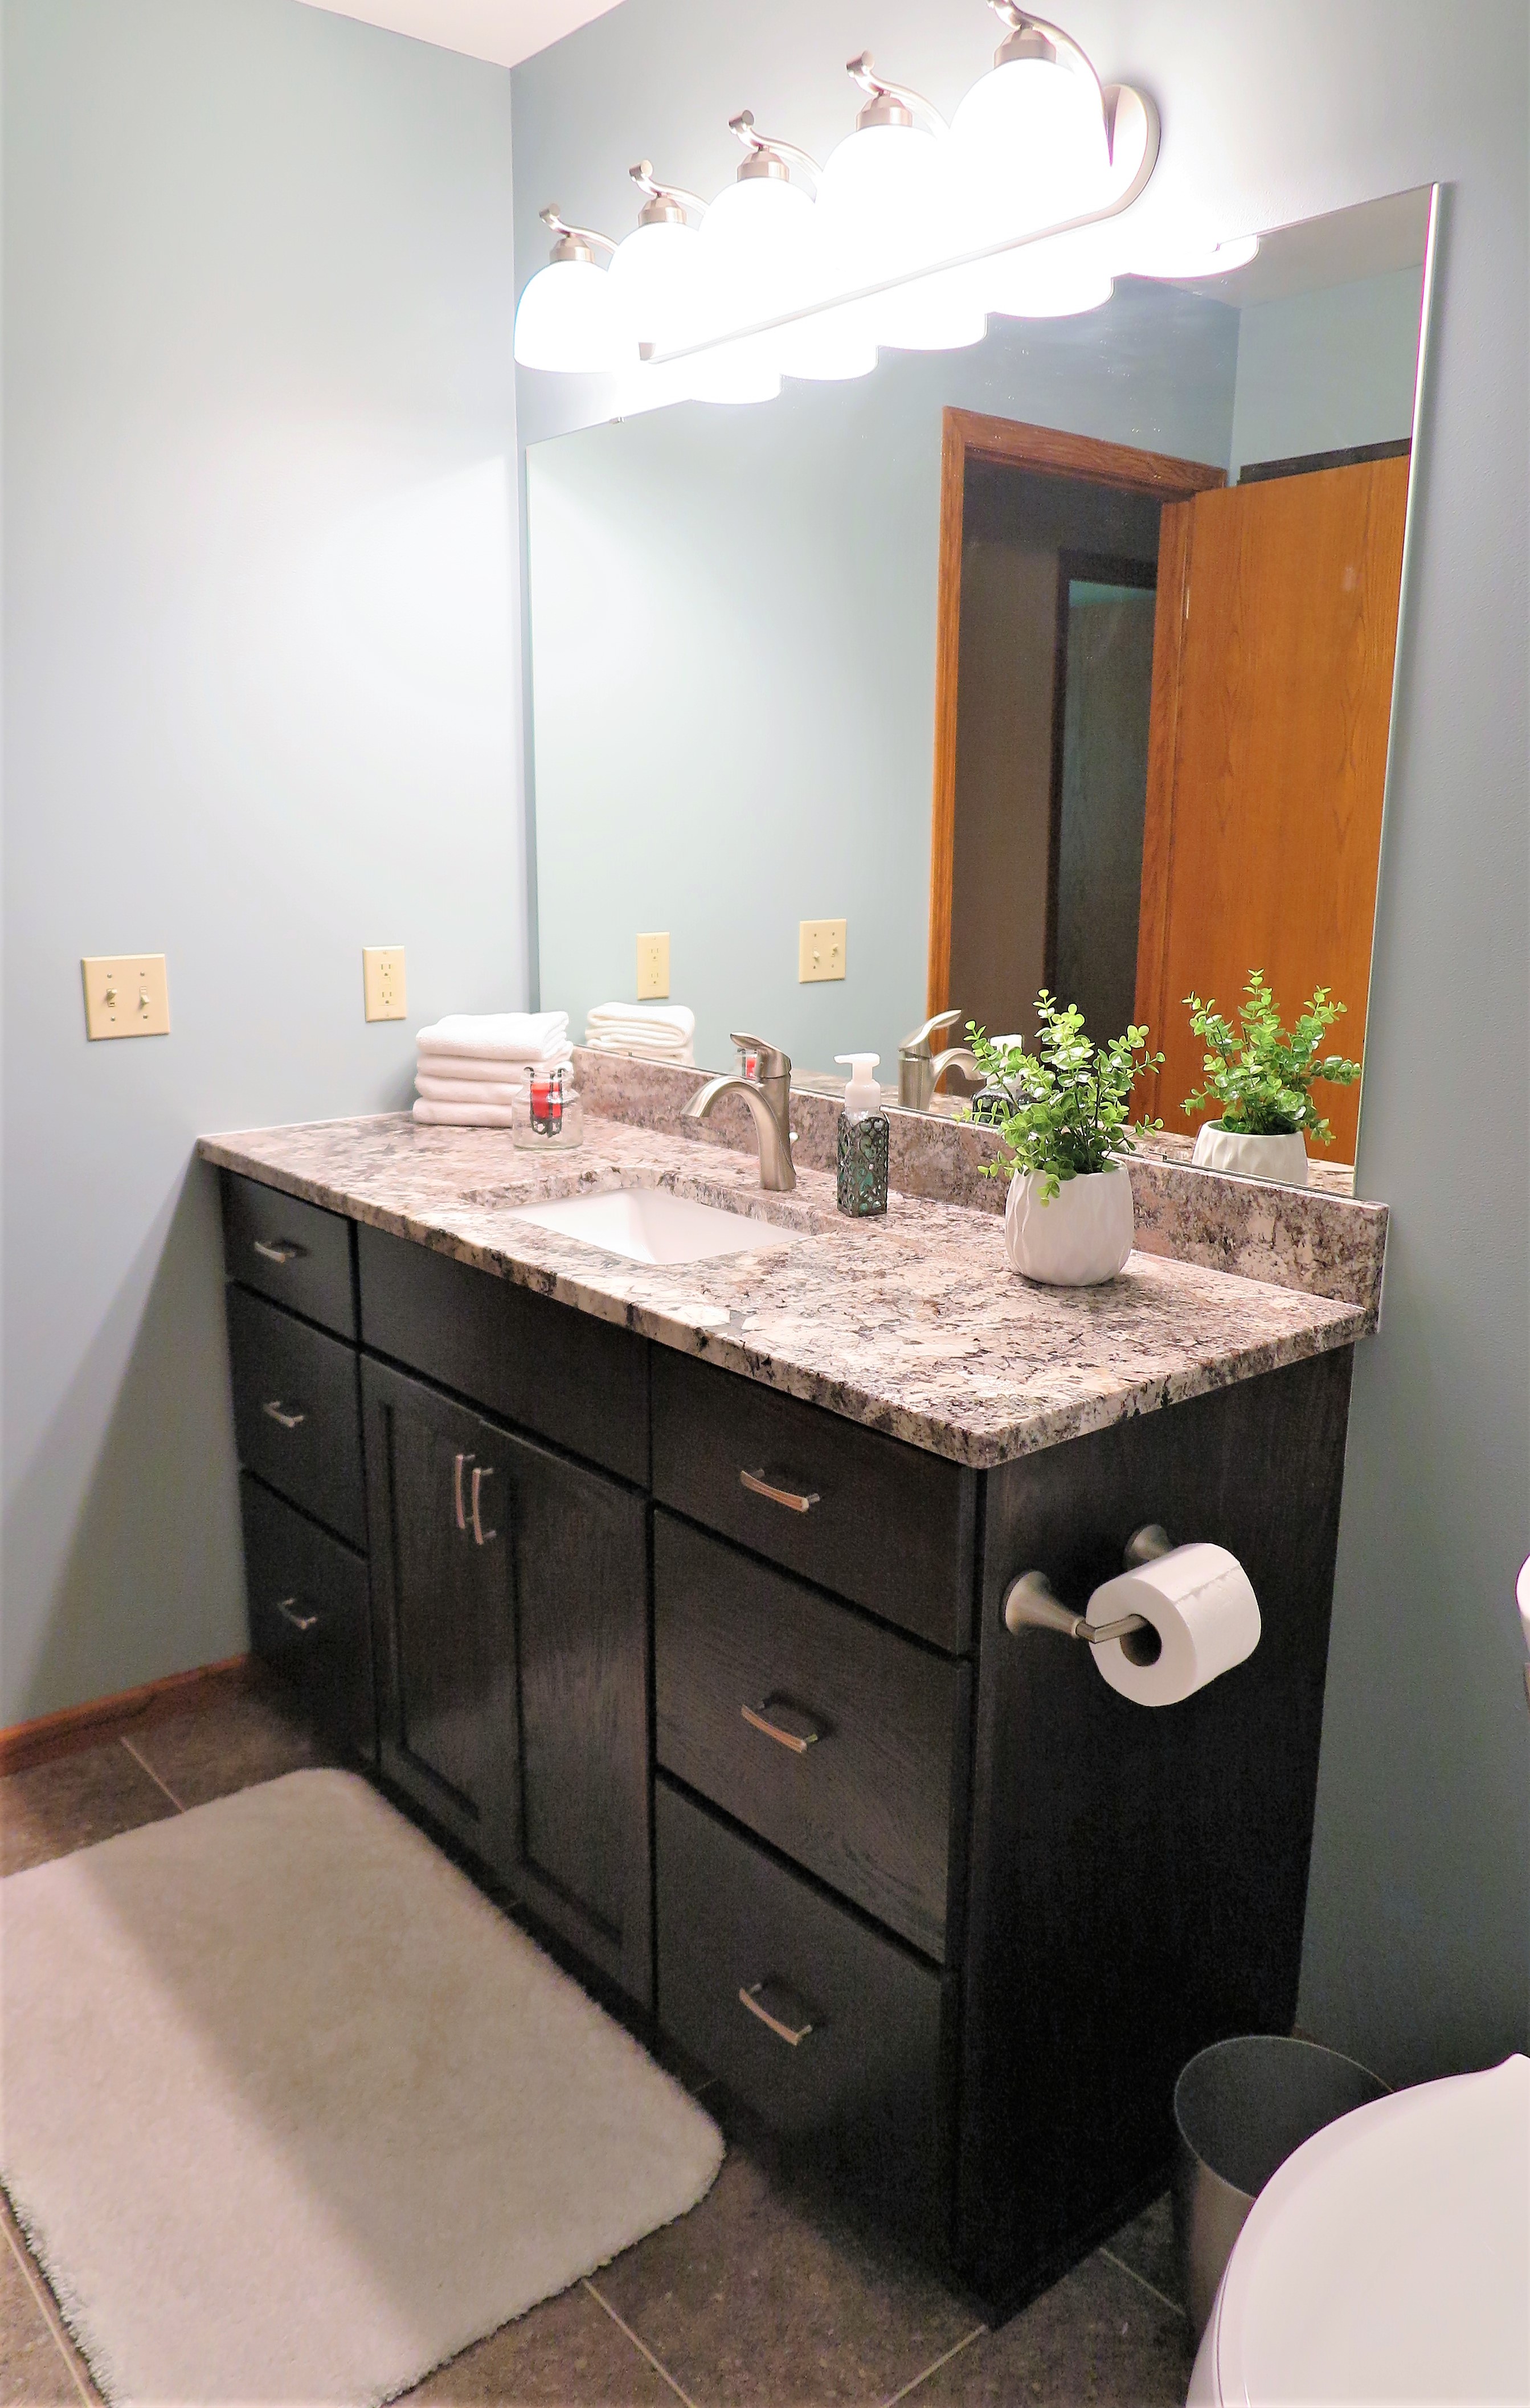 Lakeville Bathroom Remodel - After